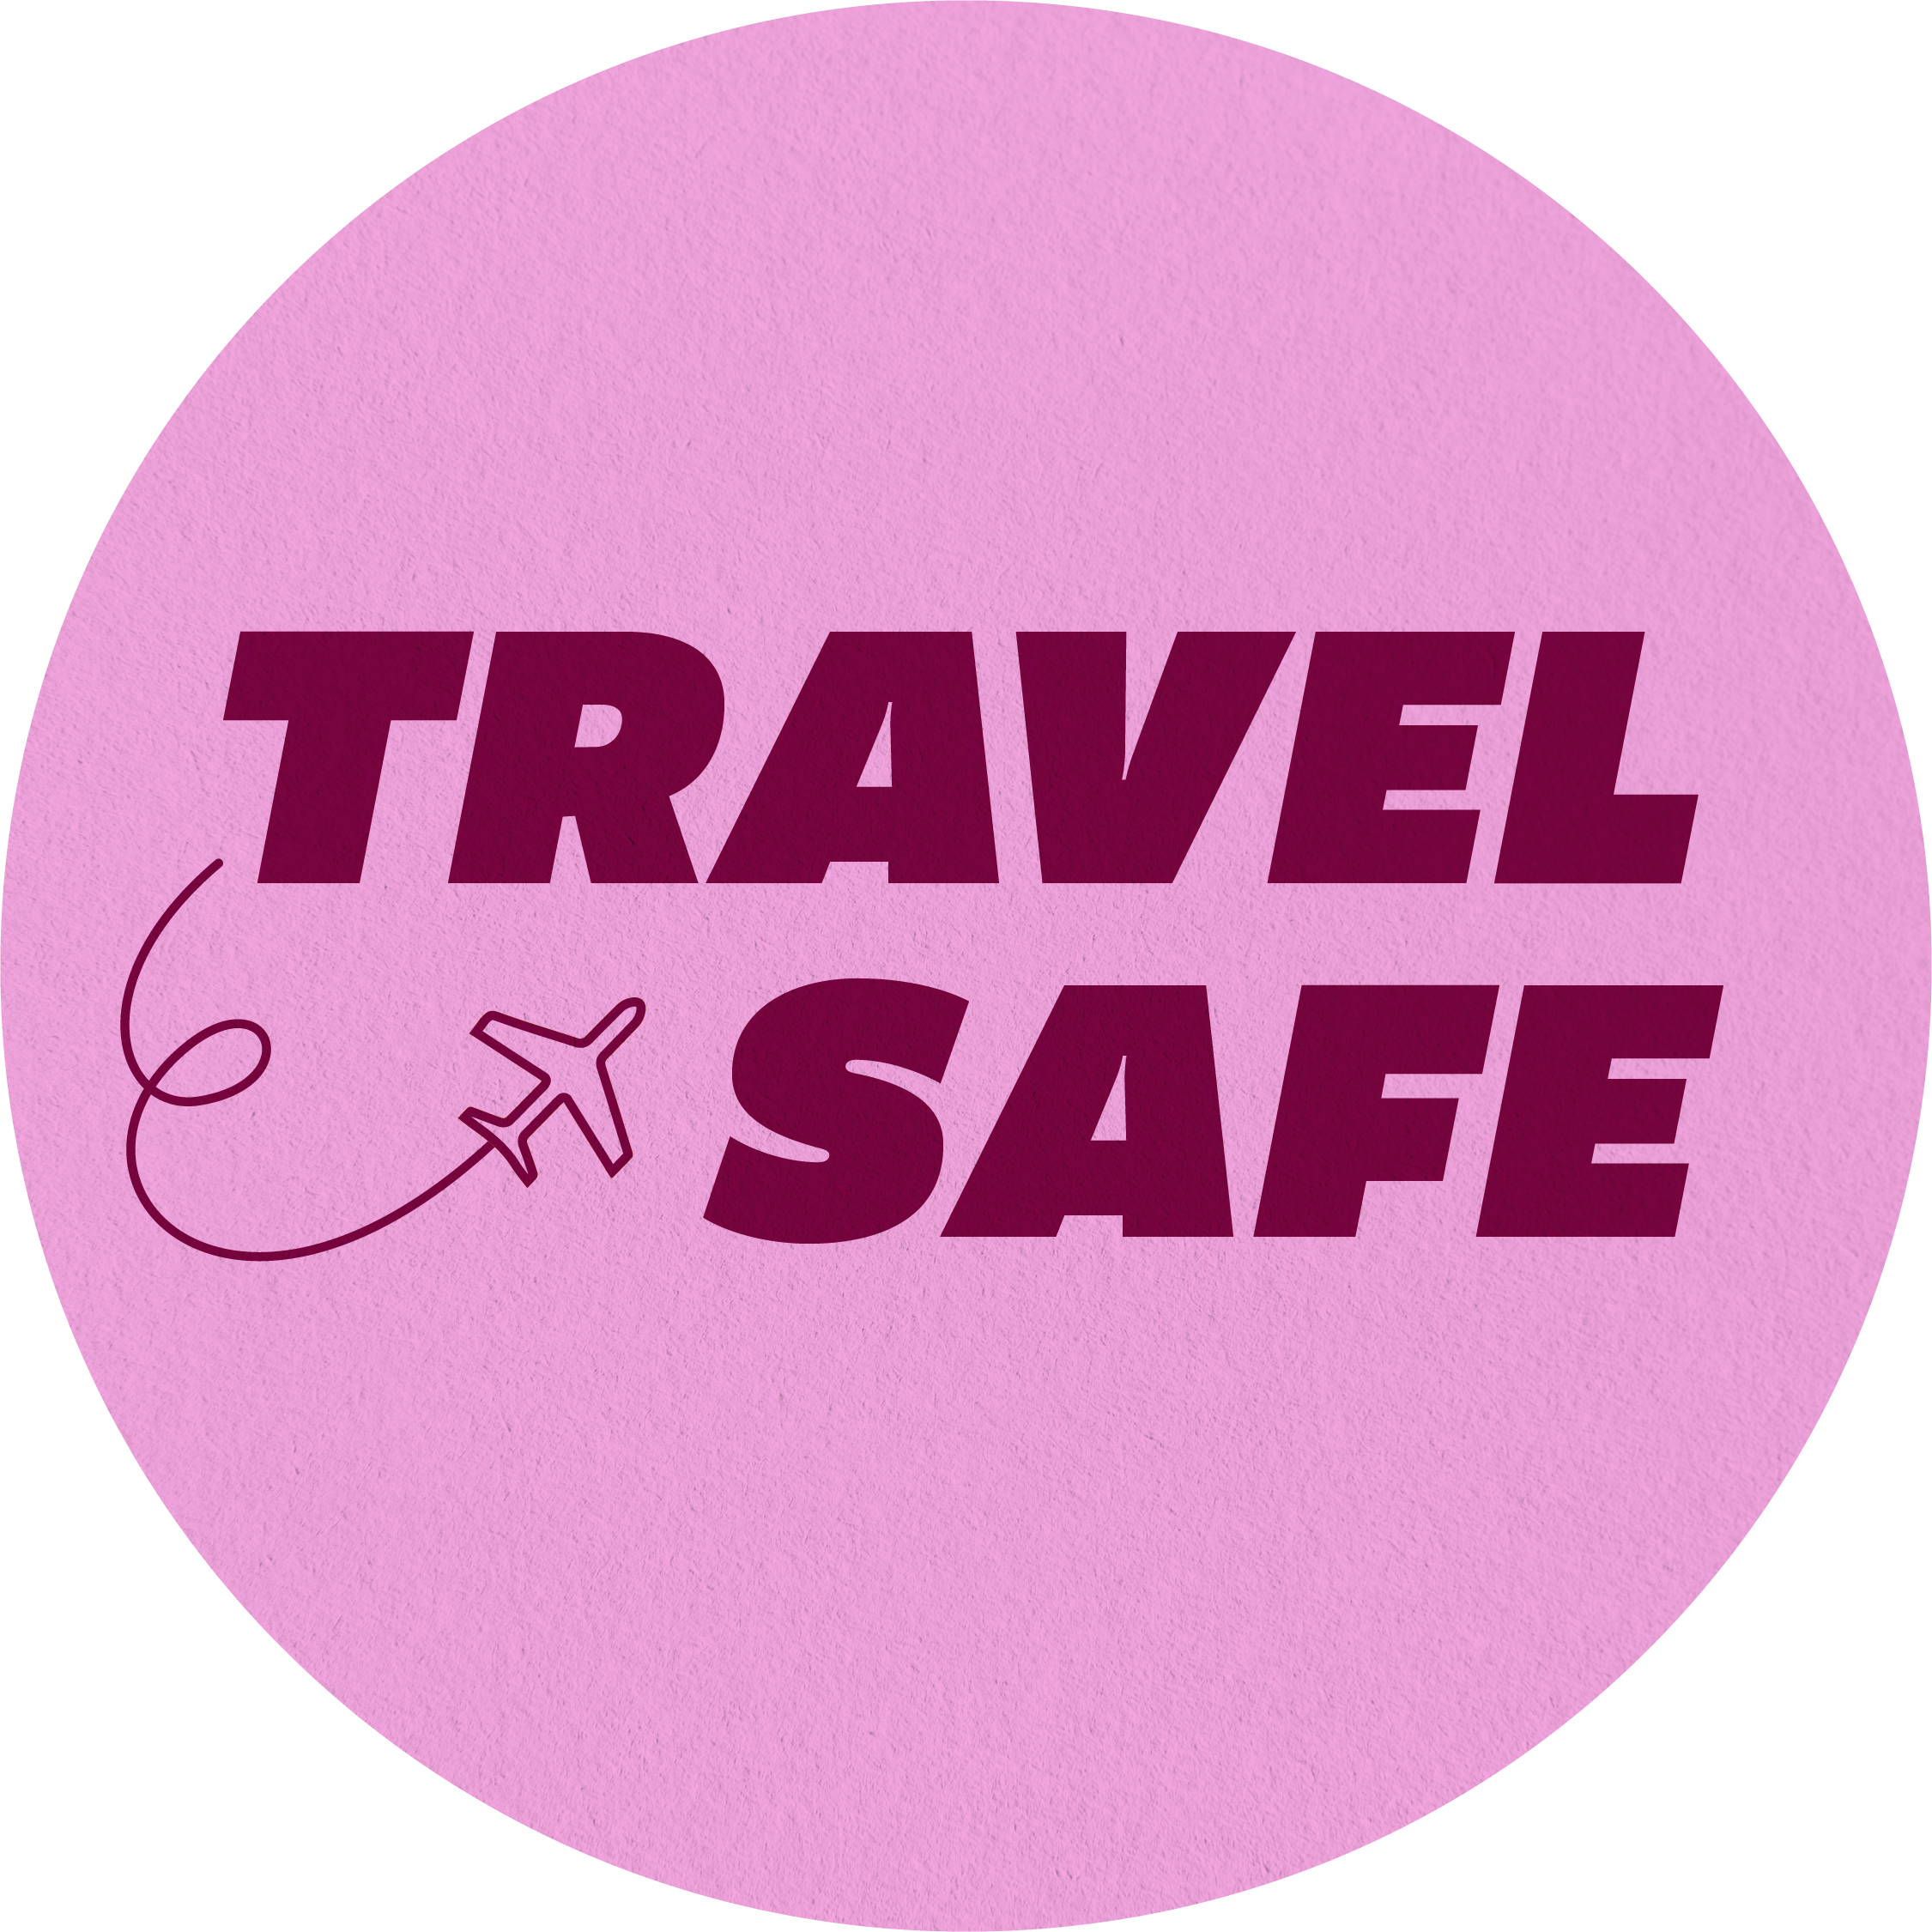 Illustrated lettering or "travel safe" on pink background.